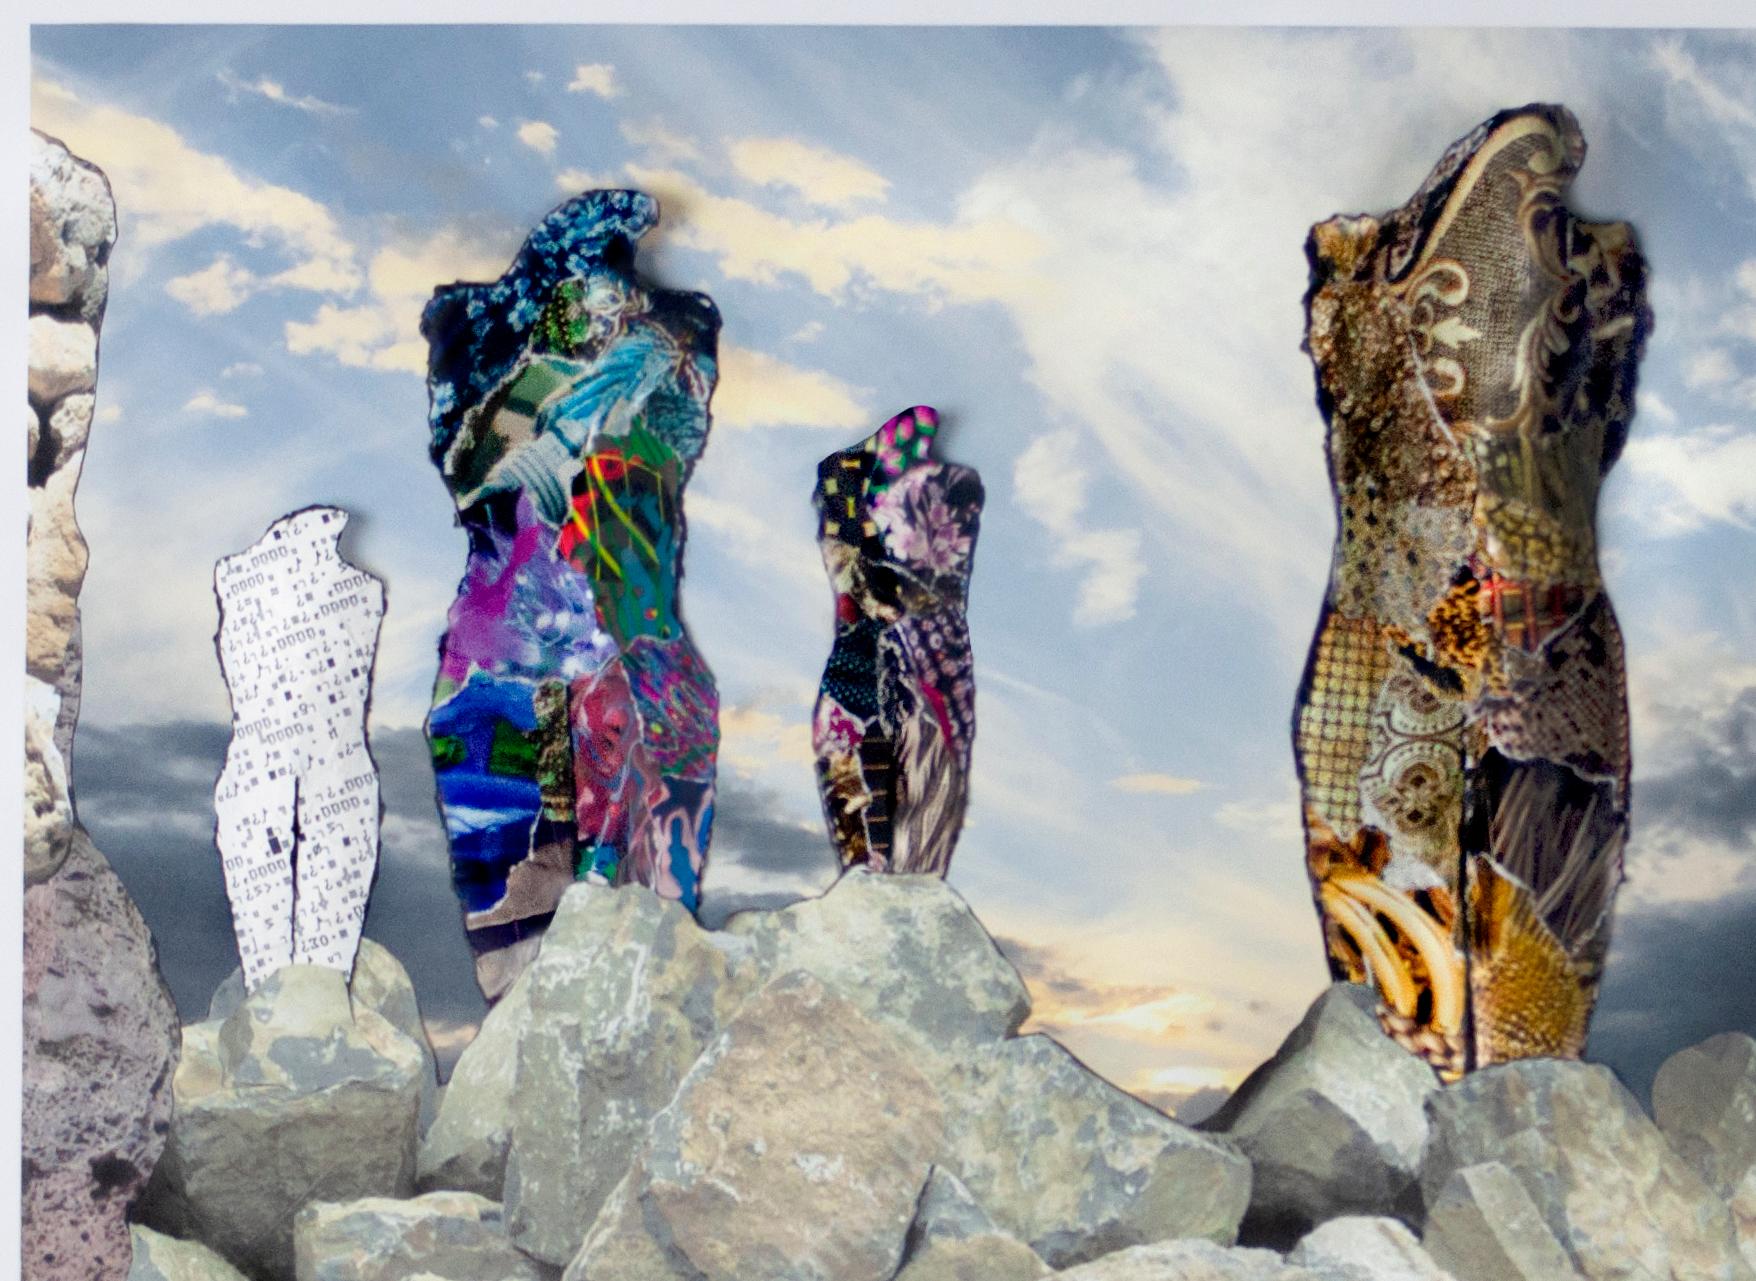 Sechs Figuren, die vom Felsen auf dem Felsen erheben, 1000 - 3D-Skulptur-Zeichnungscollage (Zeitgenössisch), Mixed Media Art, von Linda Stein